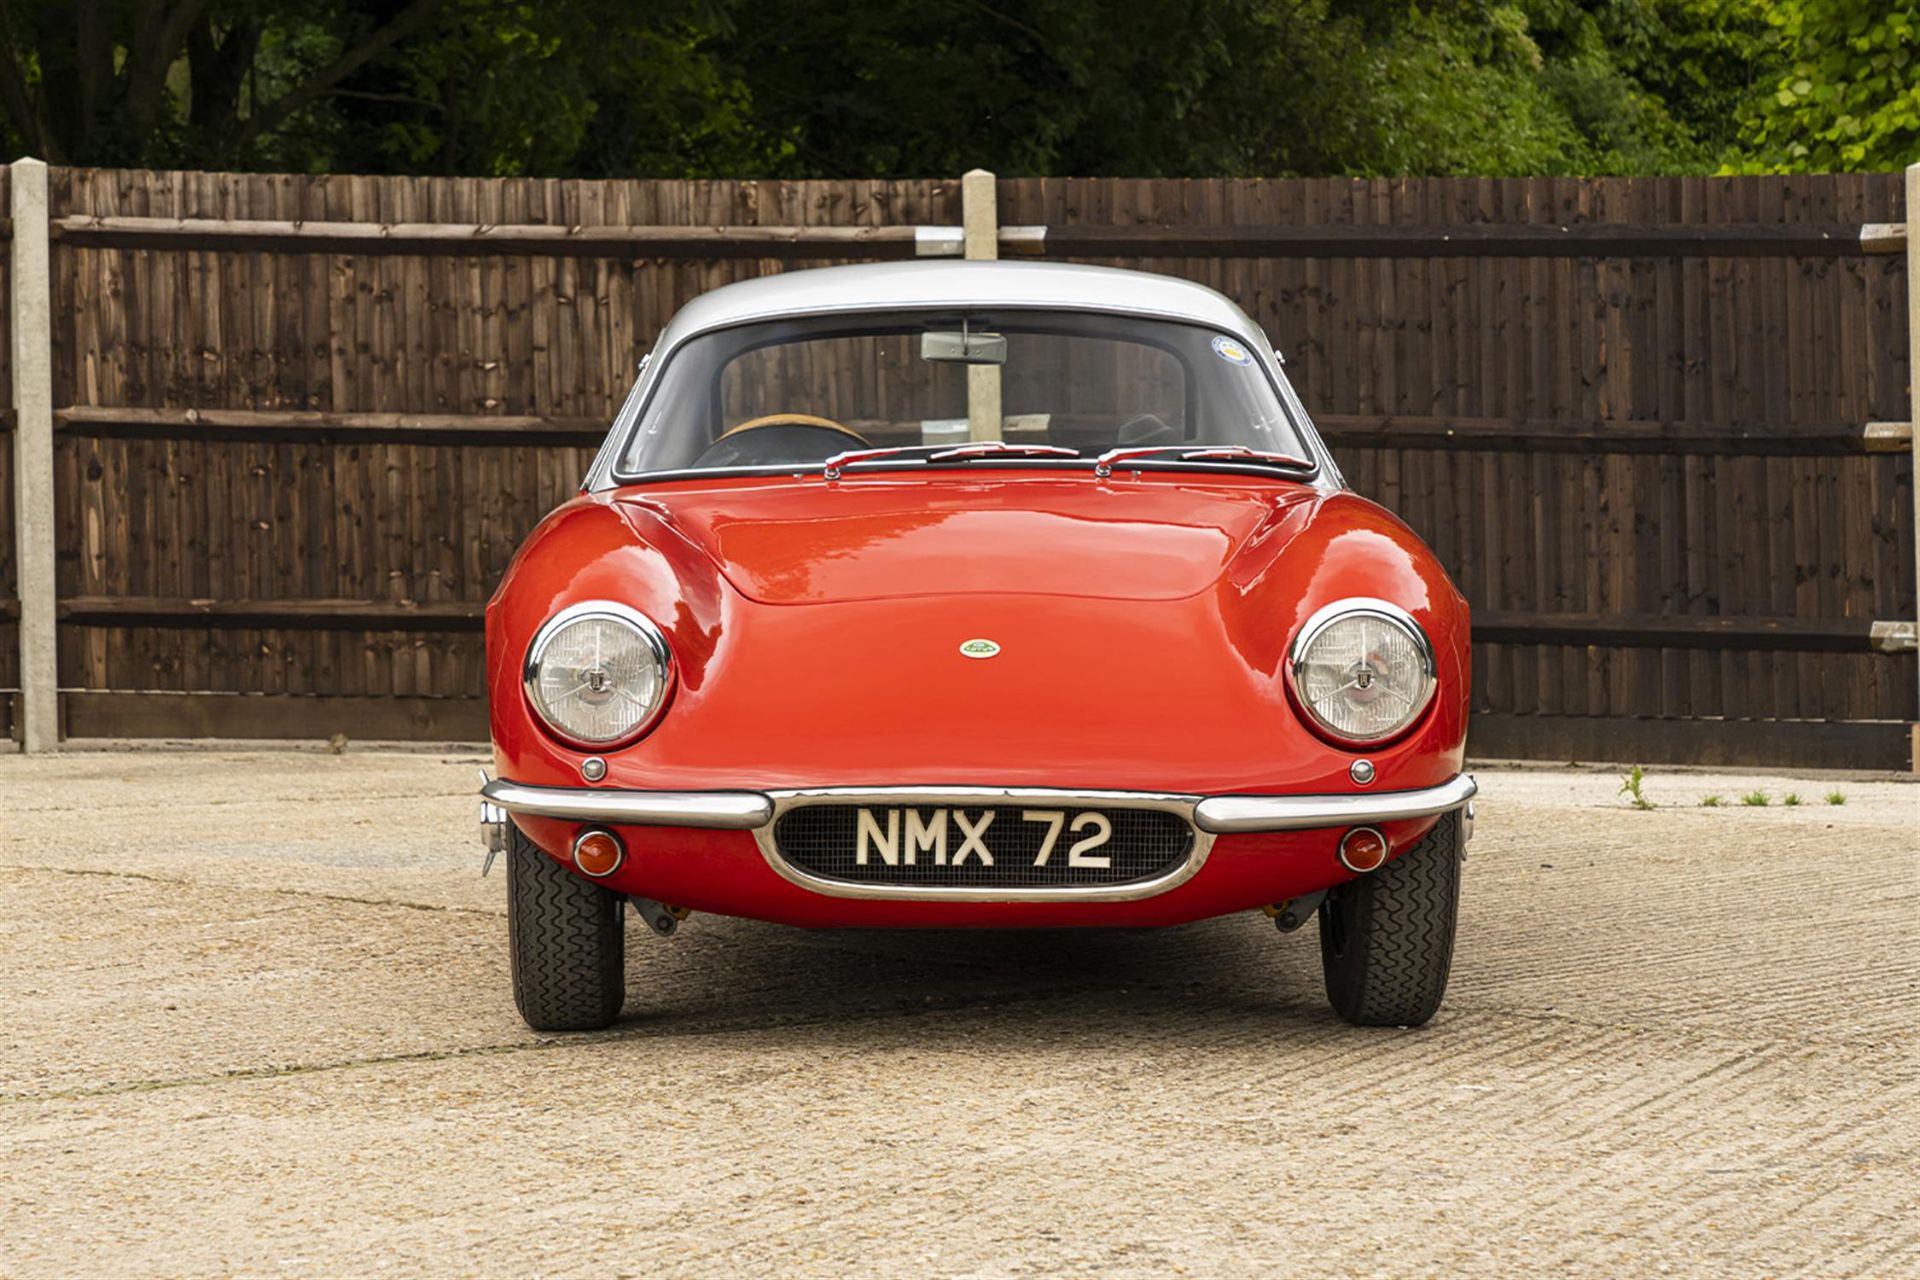 1962 Lotus Elite S2 (Type 14) - Image 6 of 10